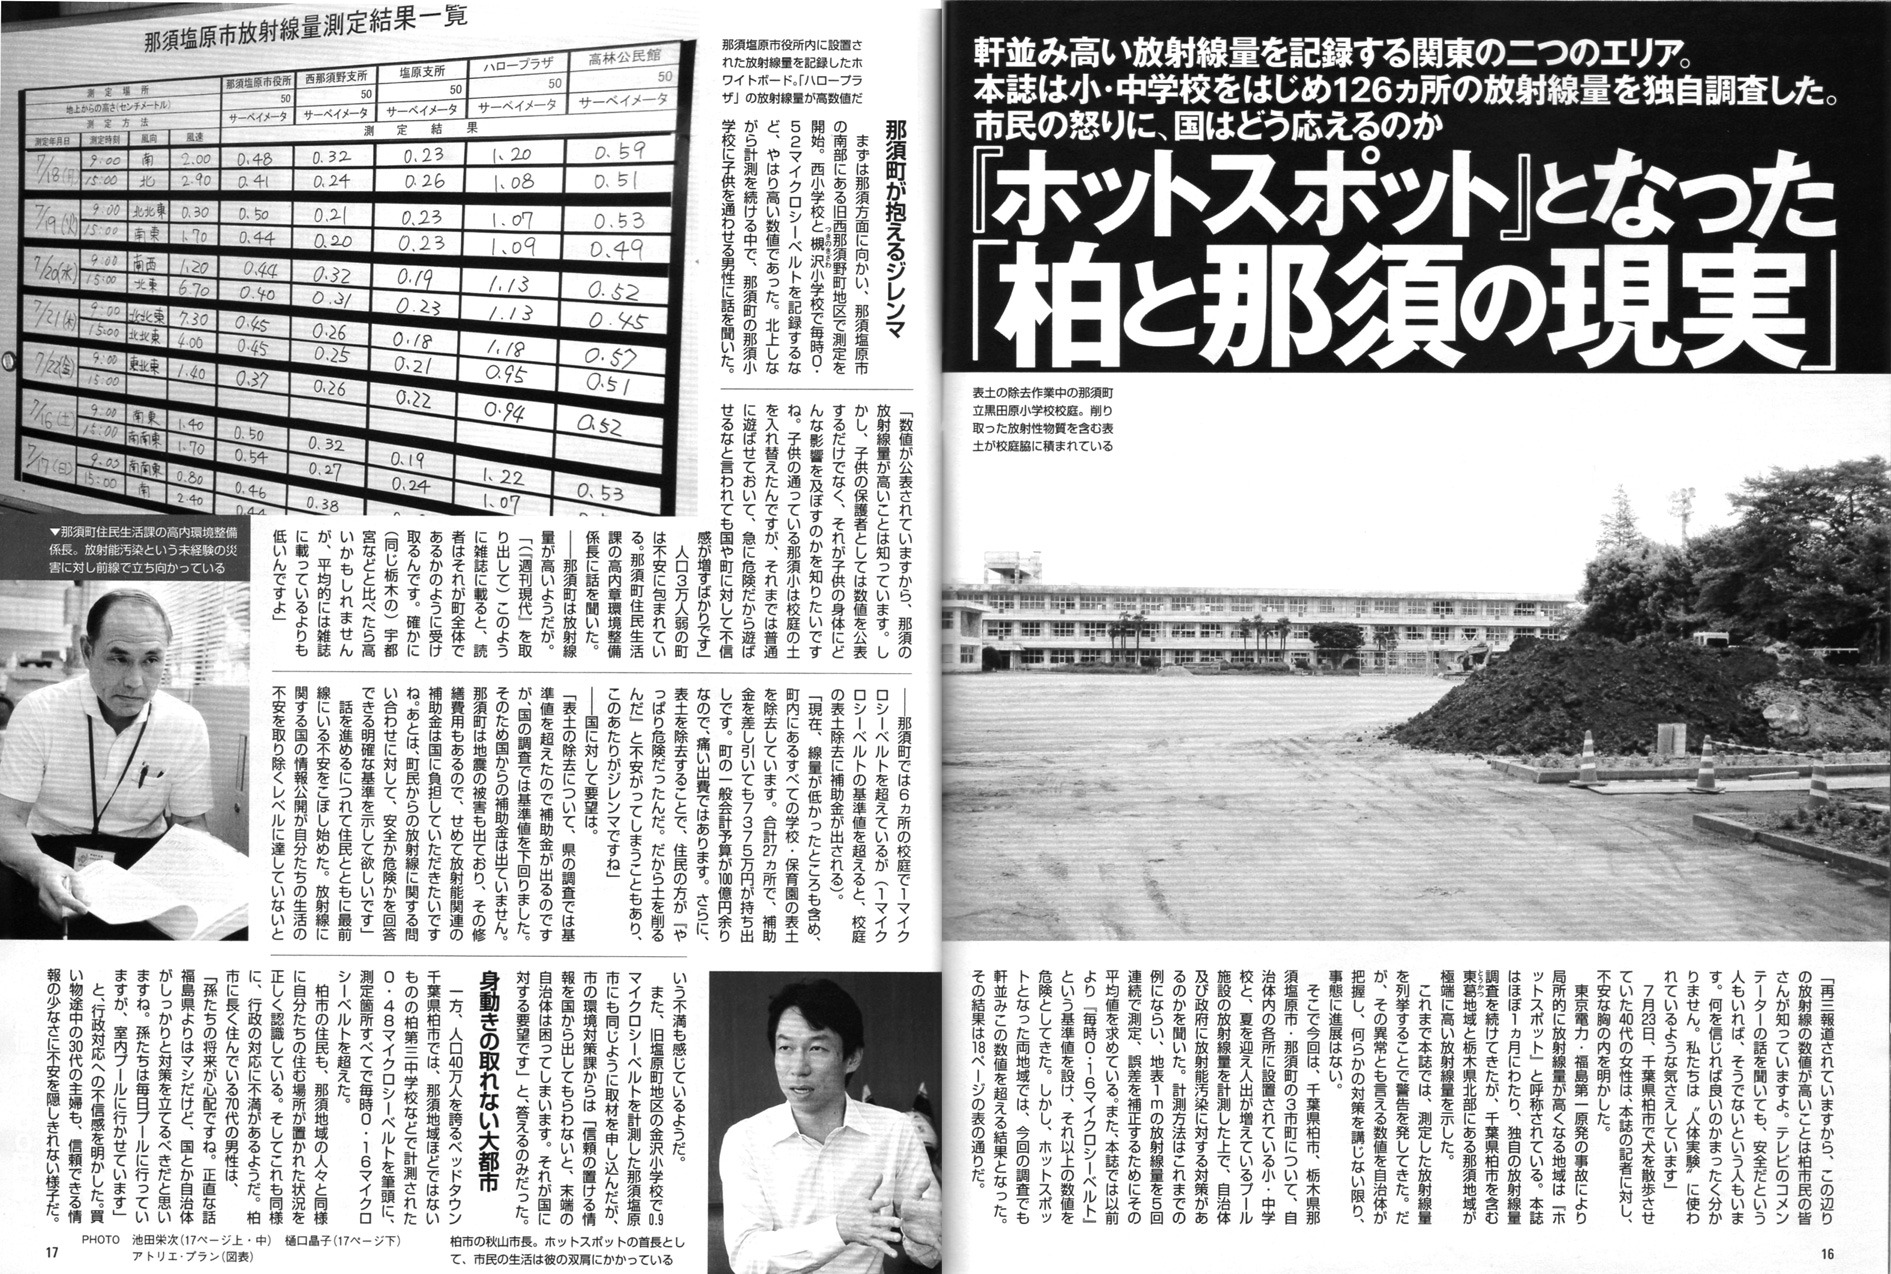 2011年東日本大地震、福島原発、放射能汚染、津波